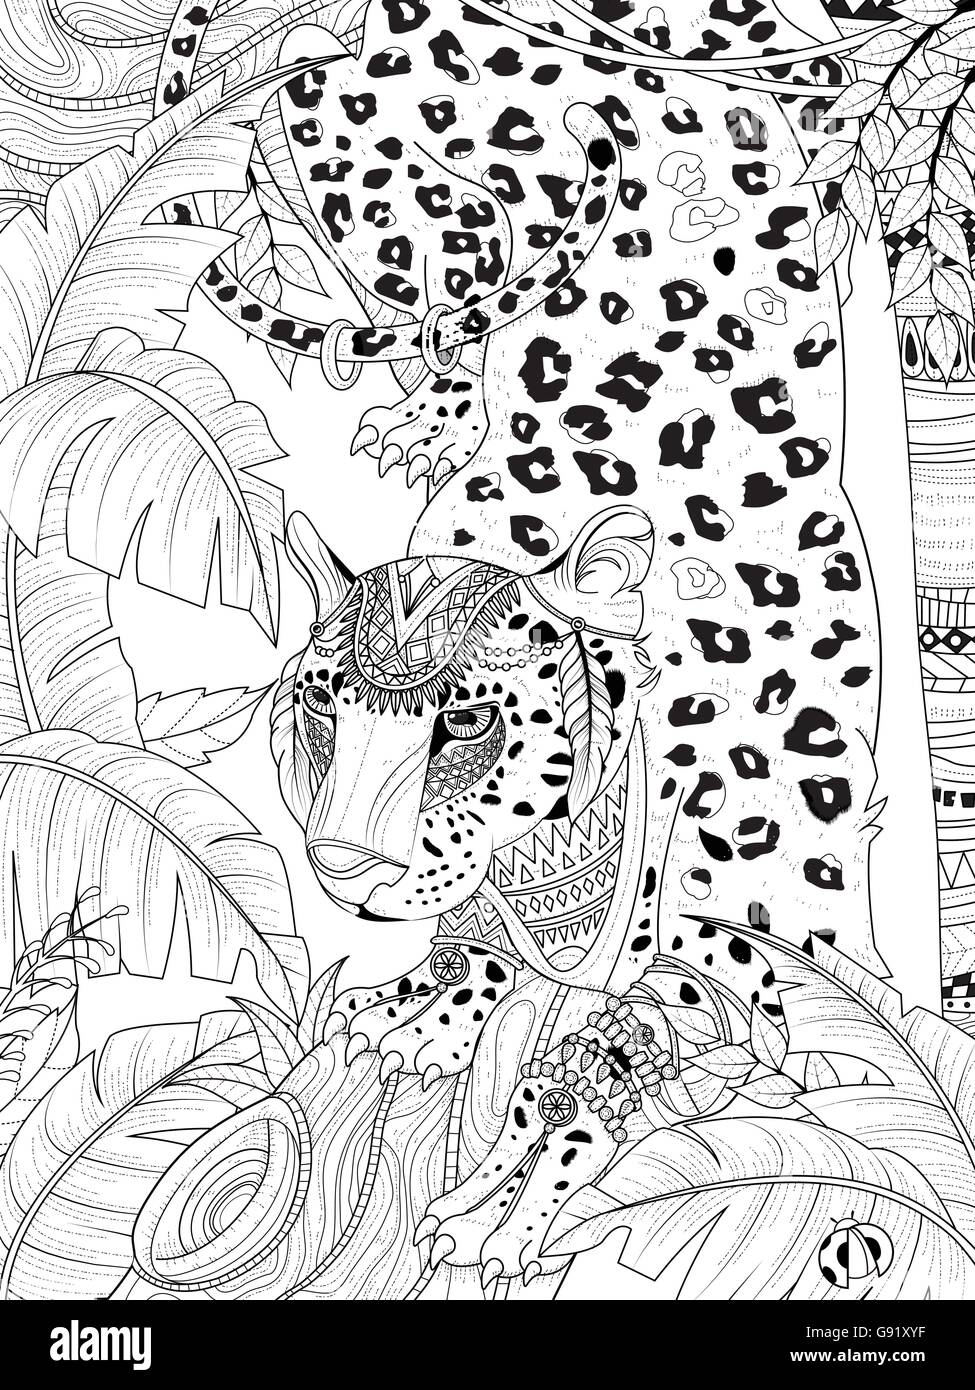 Gorgeous leopard Banque d'images noir et blanc - Alamy